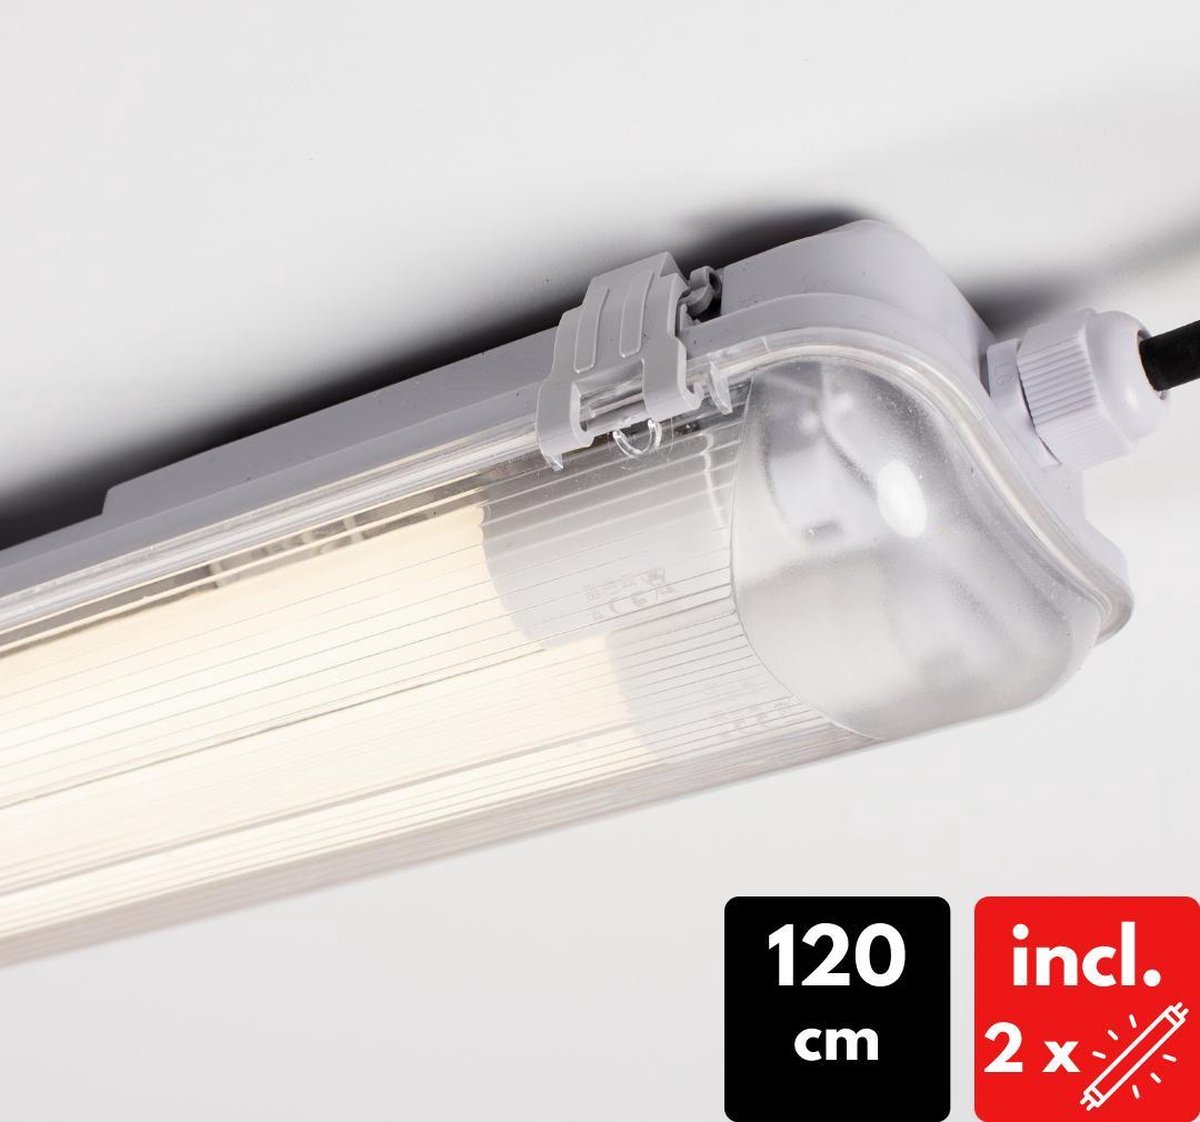 Proventa LED TL armatuur compleet incl. 2 x LED buis van 120 cm - 36W vervangt 60W - Proventa